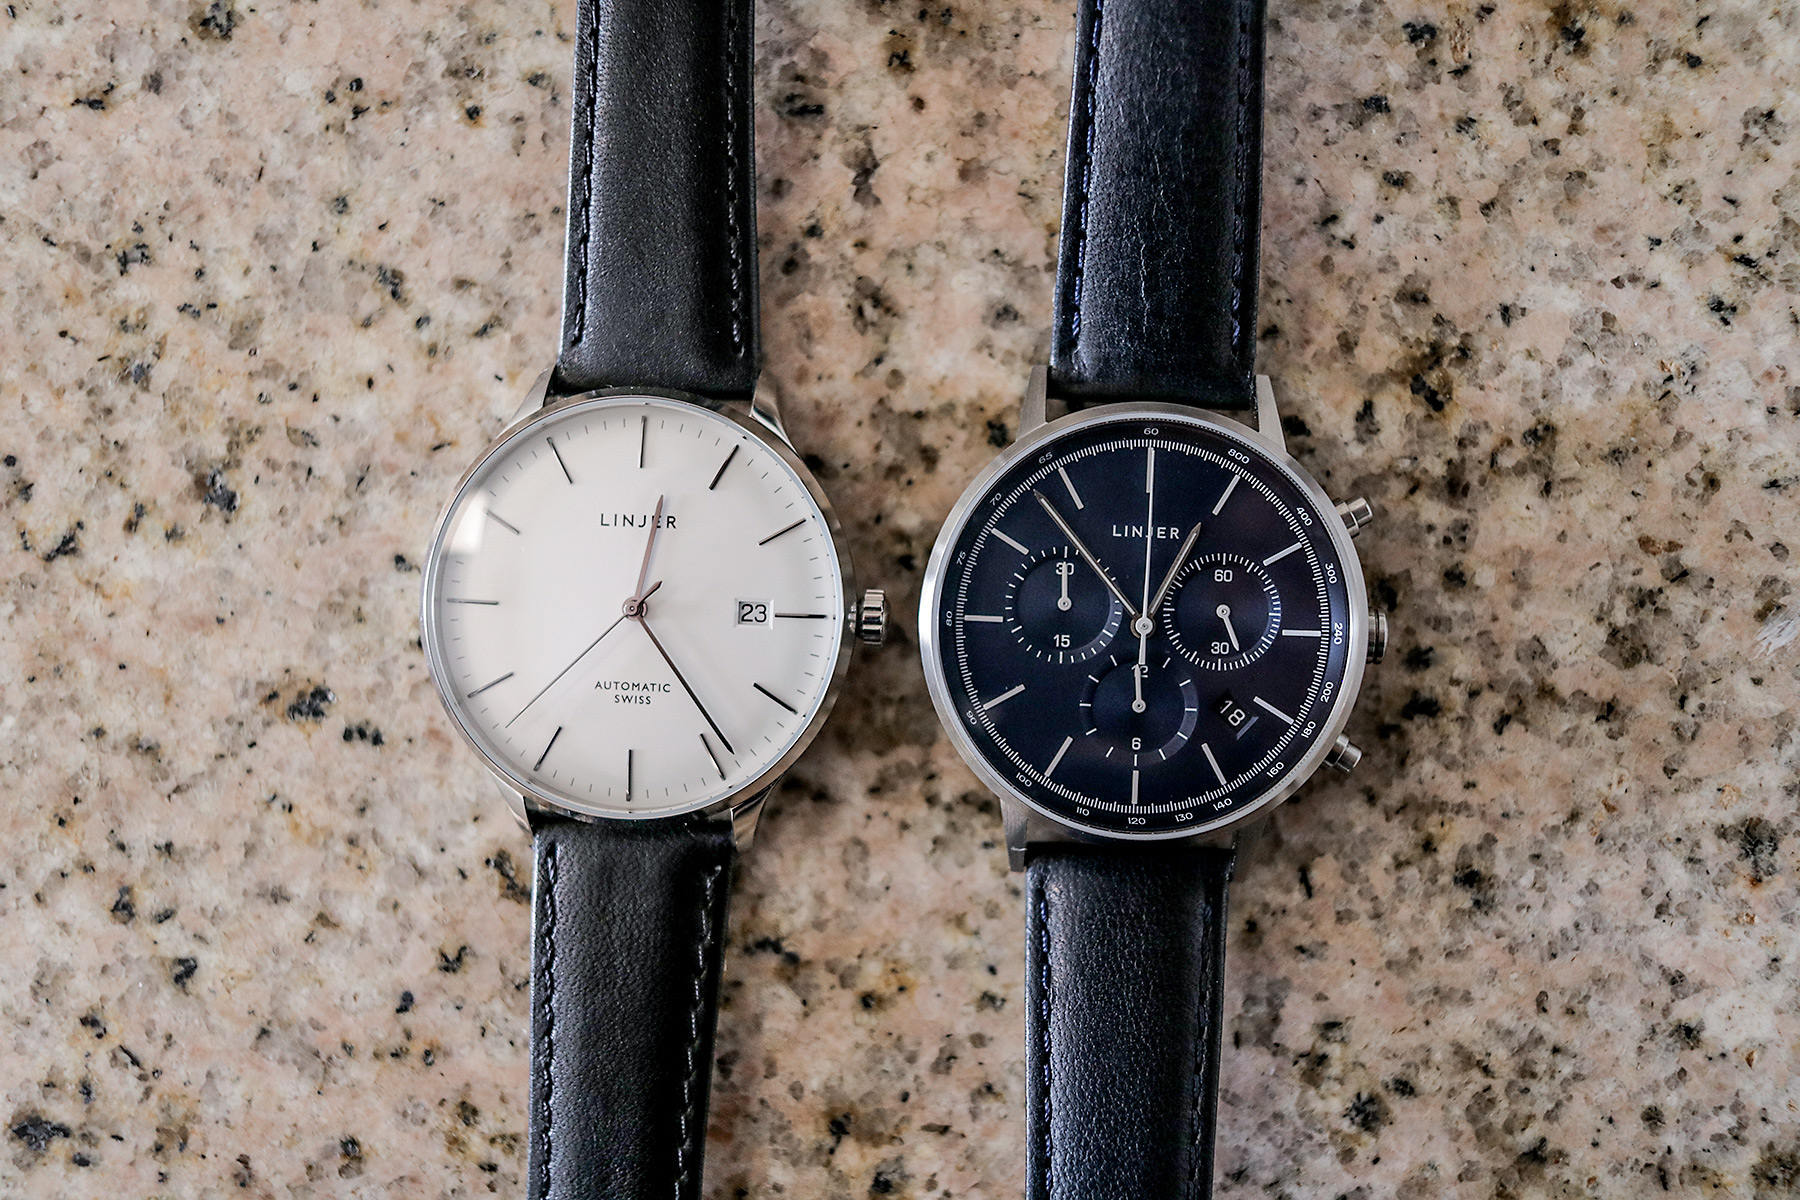 quartz vs chronograph